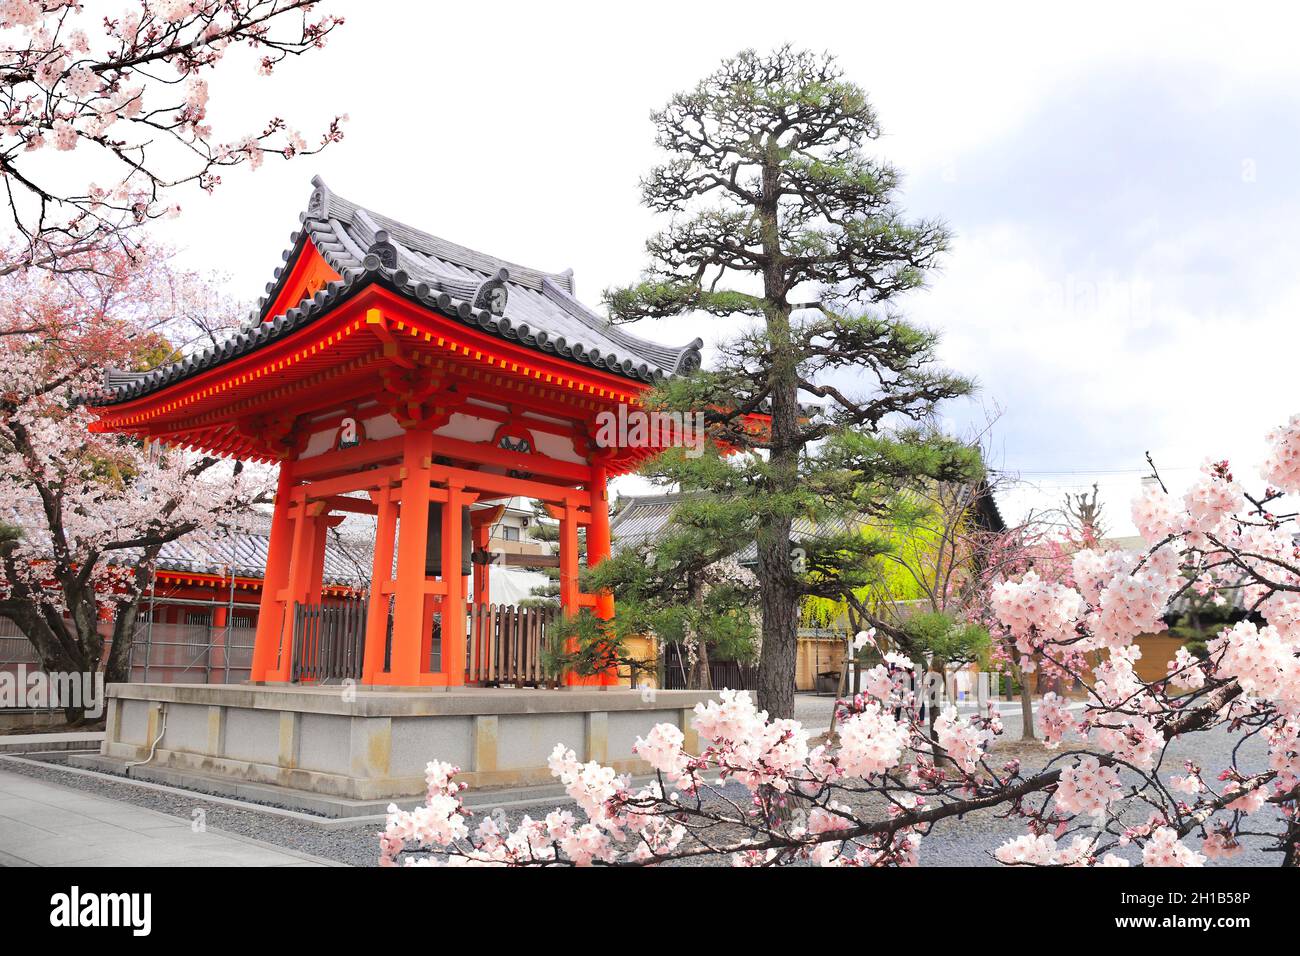 Sakura en fleurs et pavillon ancien dans le jardin près de la salle principale du temple bouddhiste Sanjusangendo (Rengeo-in) à Kyoto, Japon Banque D'Images